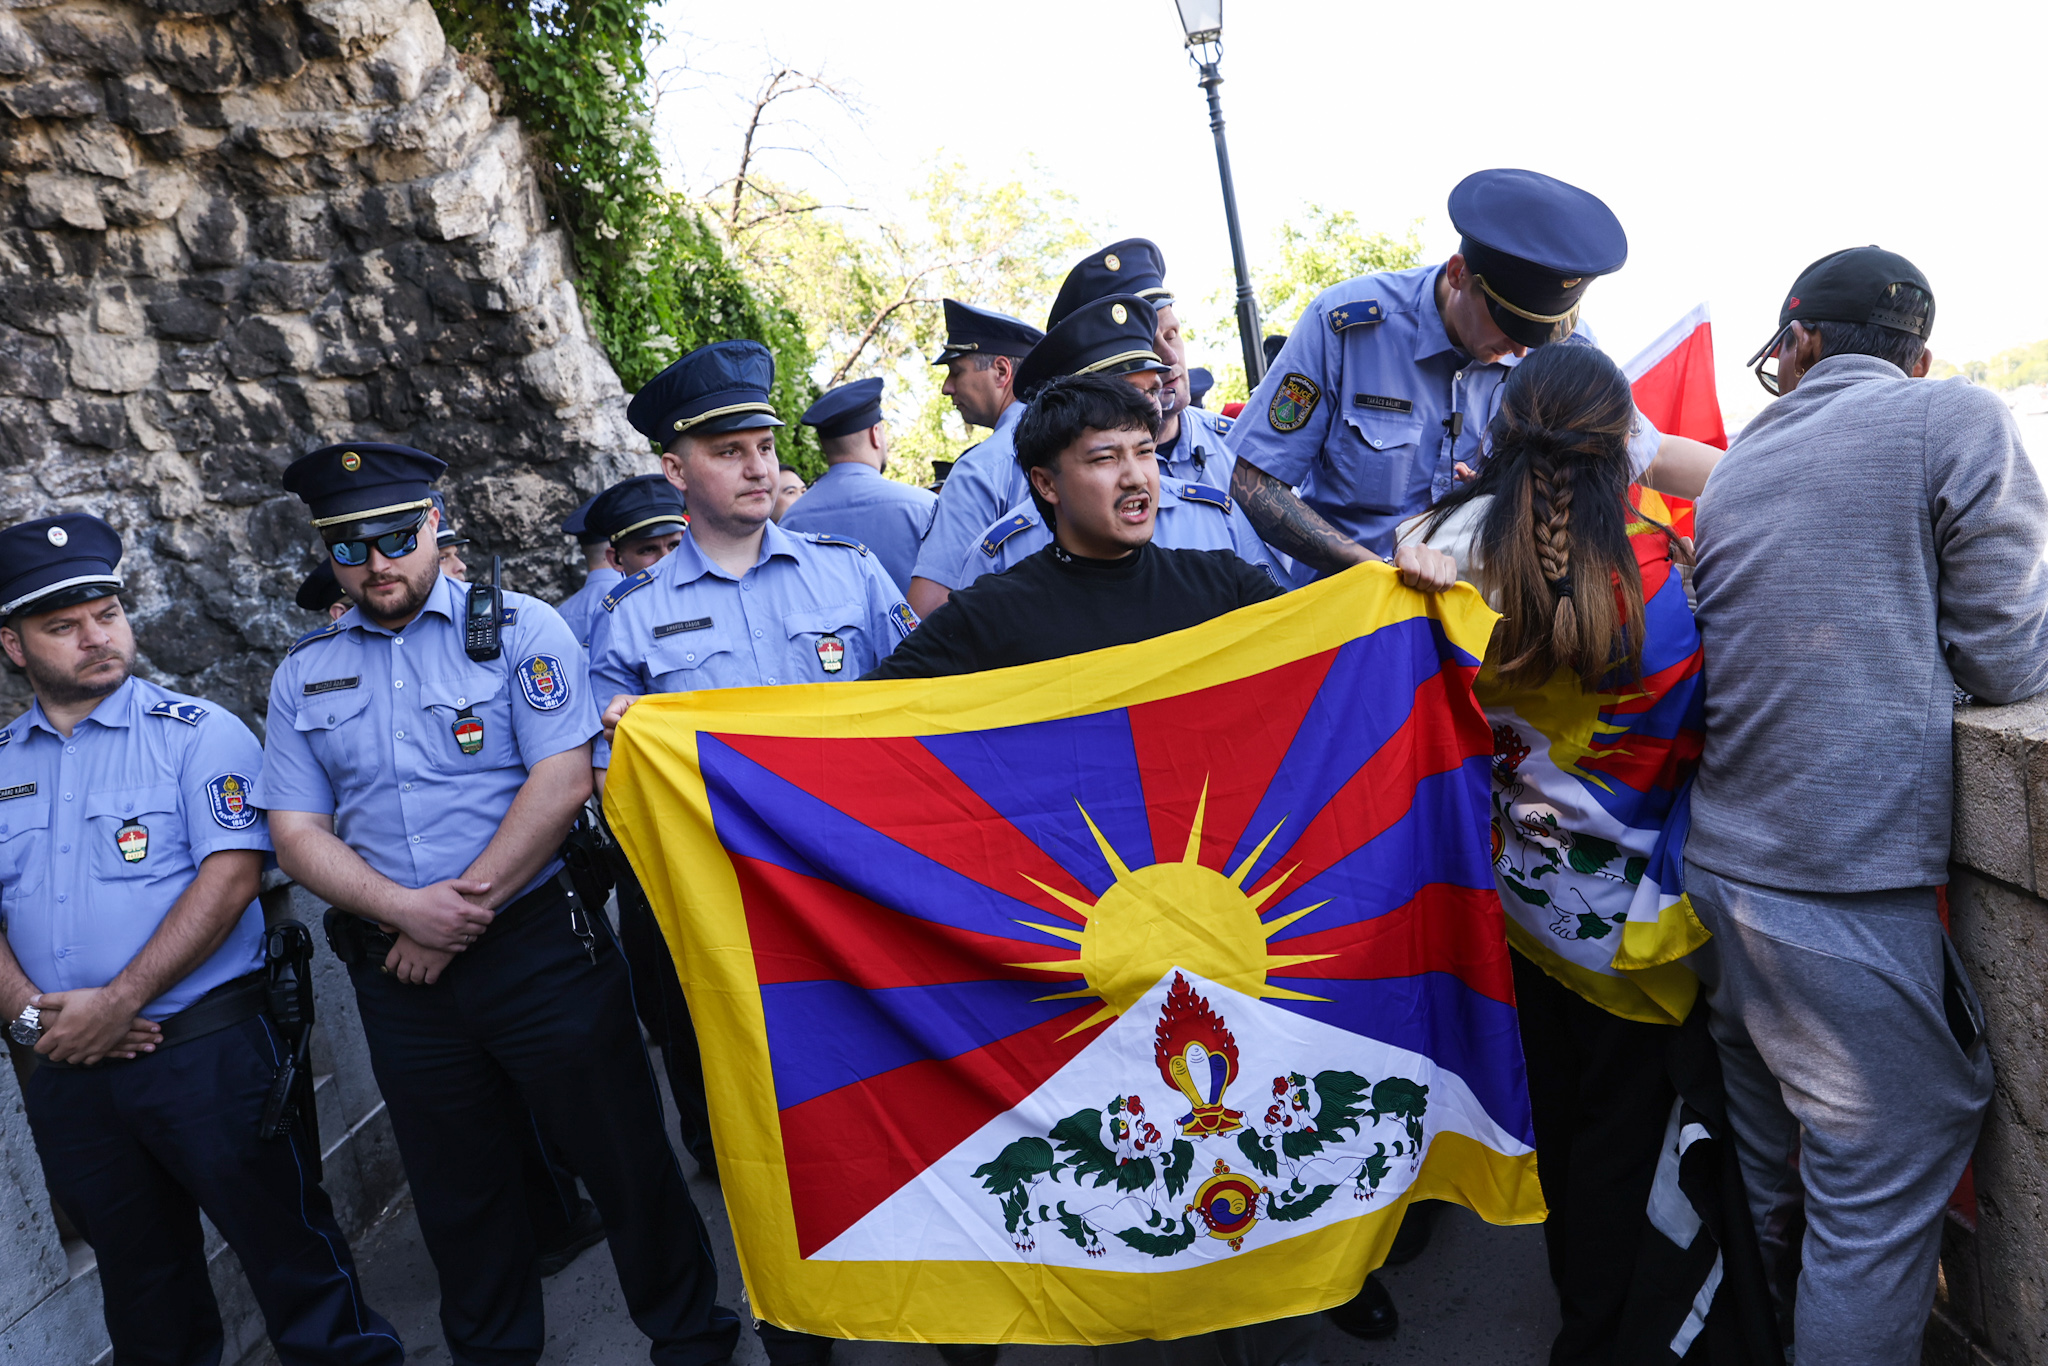 Kínaiak próbálták a tibeti zászlót leszedni, magyar rendőrök avatkoztak bele a távol-keleti zászlócsatába